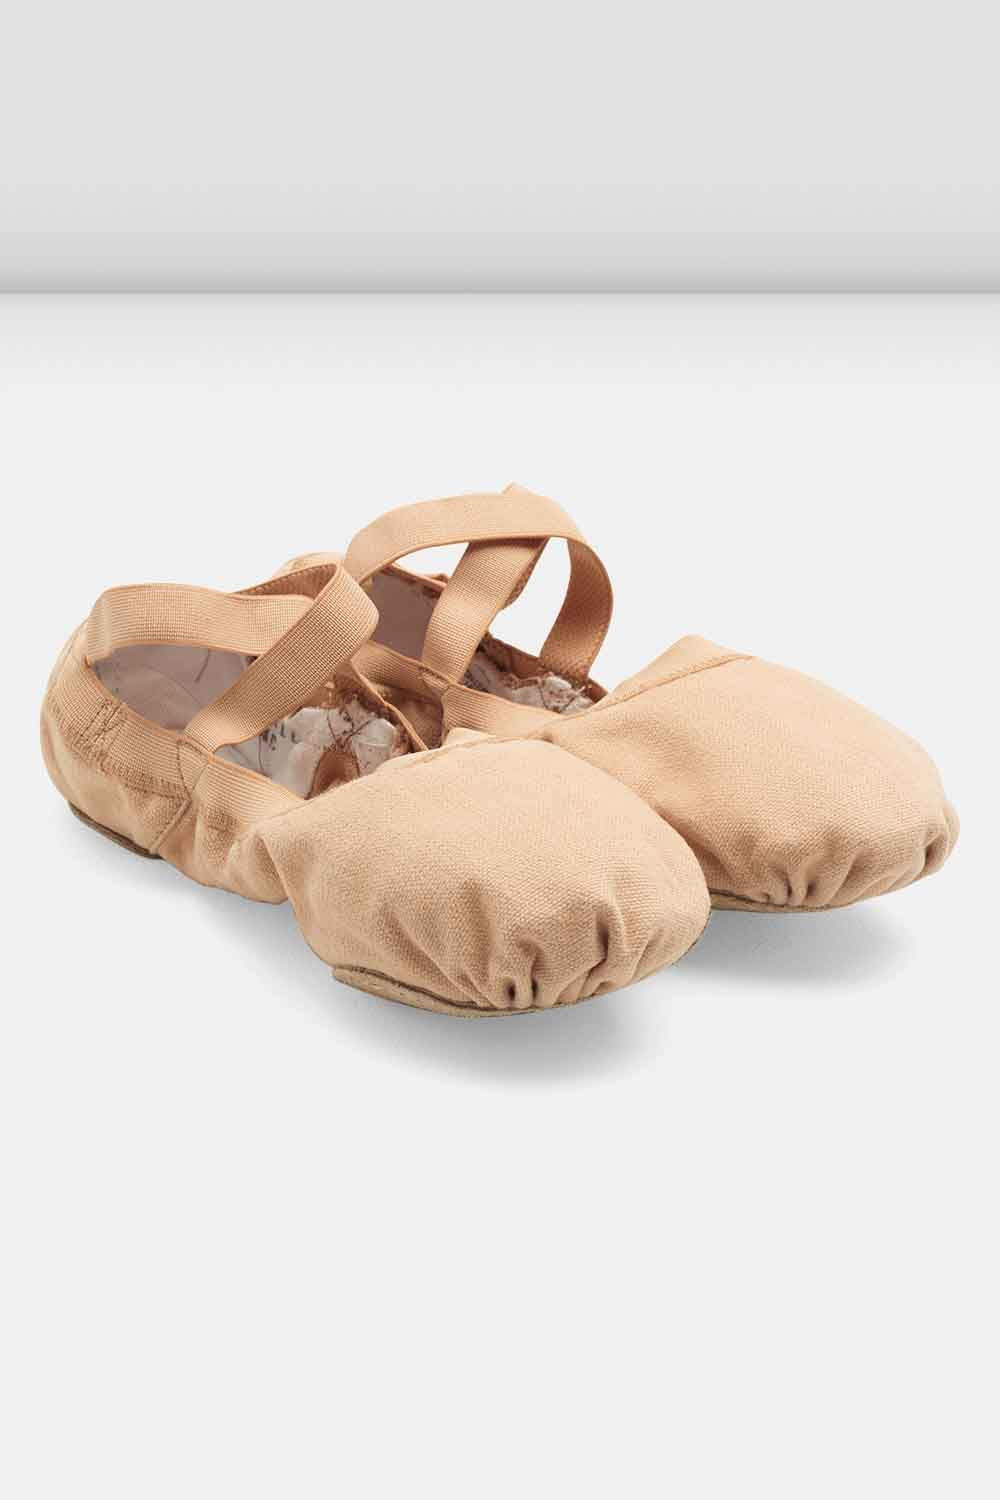 Ladies Pro Elastic Canvas Ballet Shoes, Light Sand – BLOCH Dance US